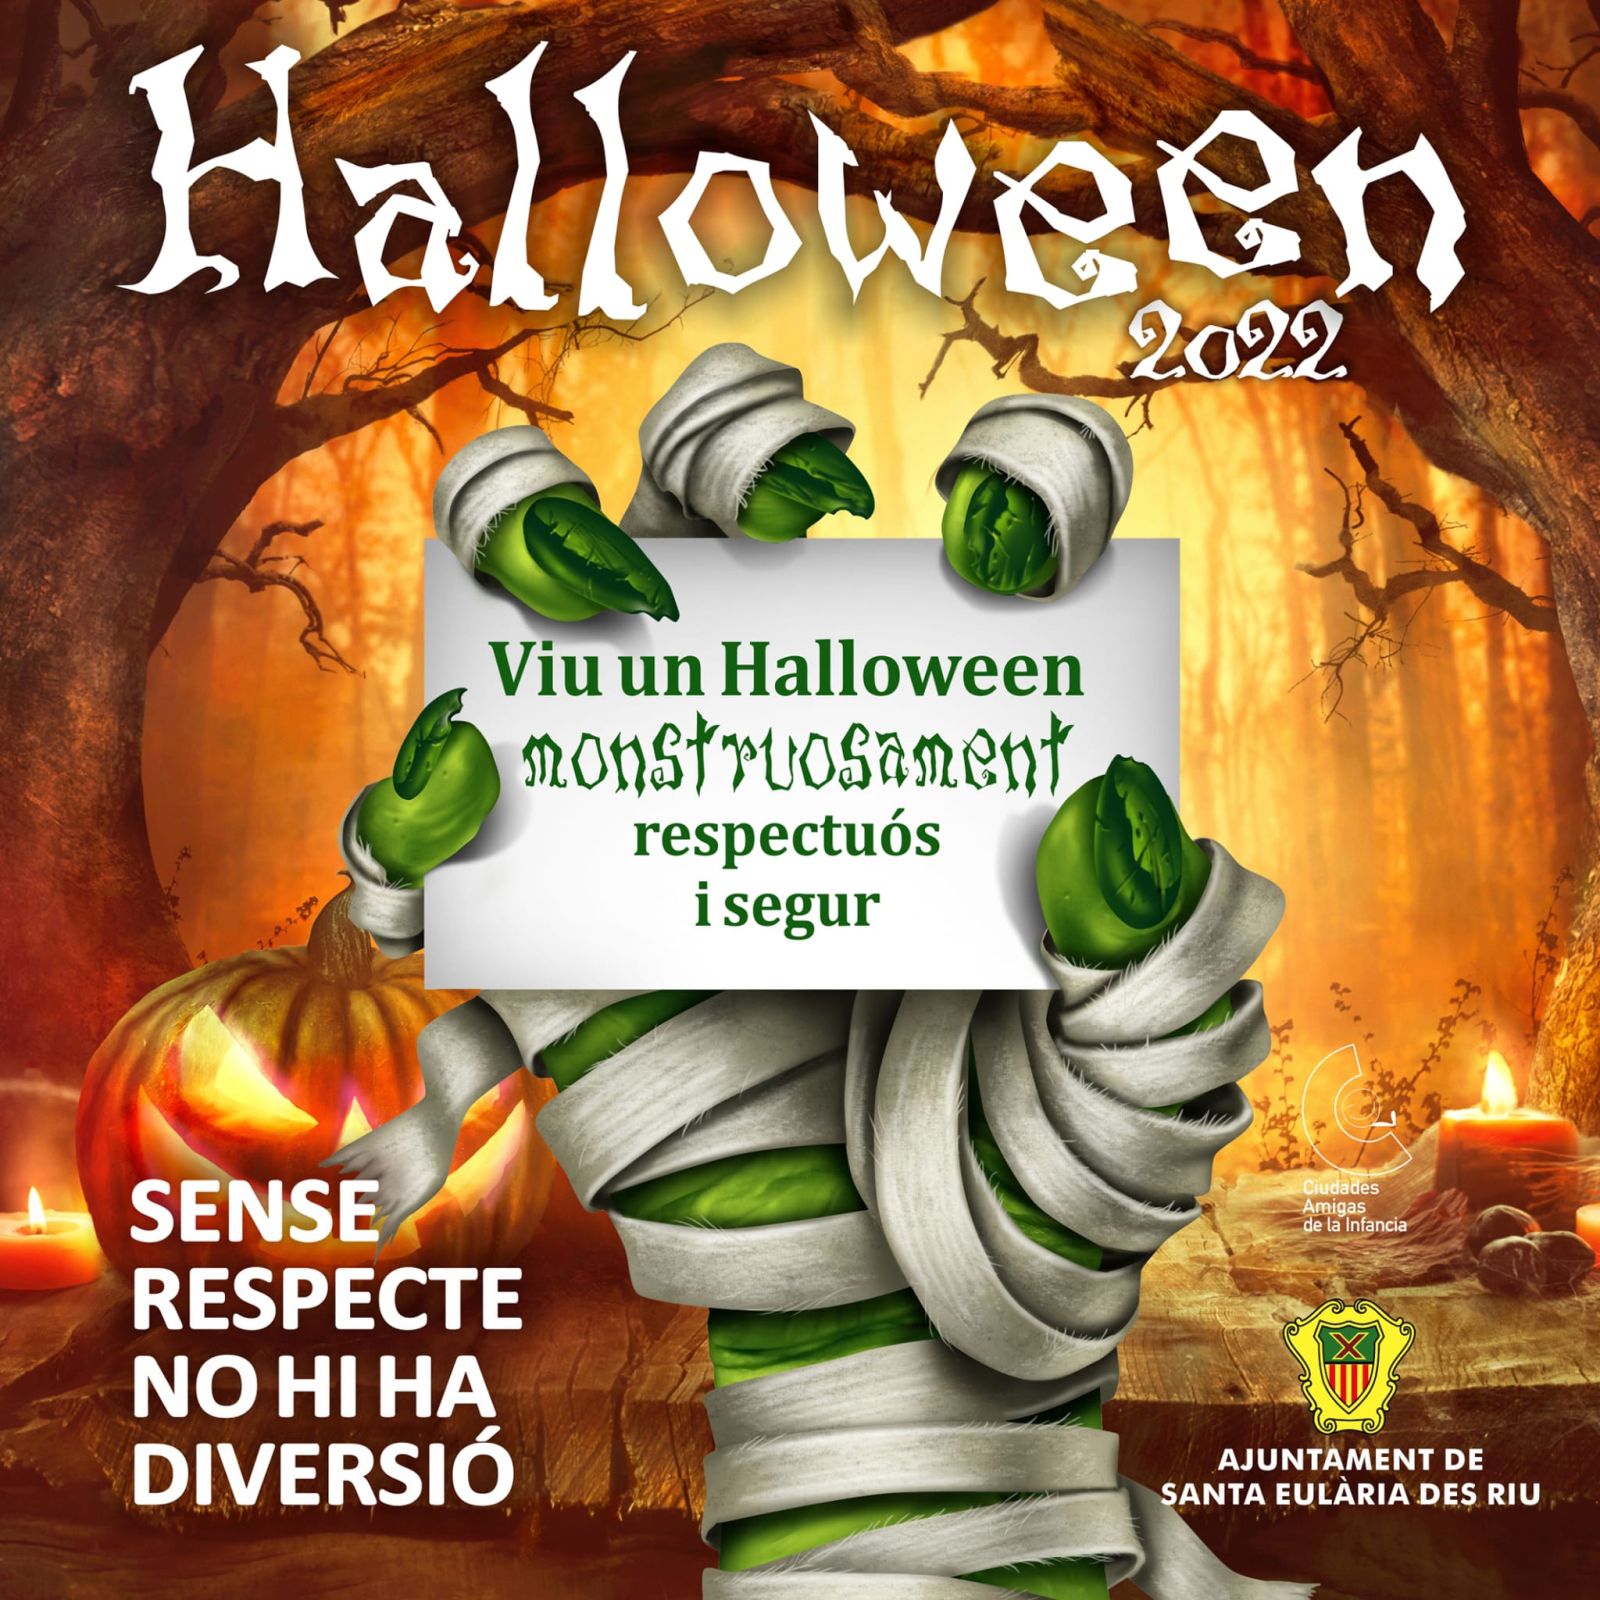 Tallers de Tots Sants, trencada de fruit secs, contes i màgia en les sessions de Halloween